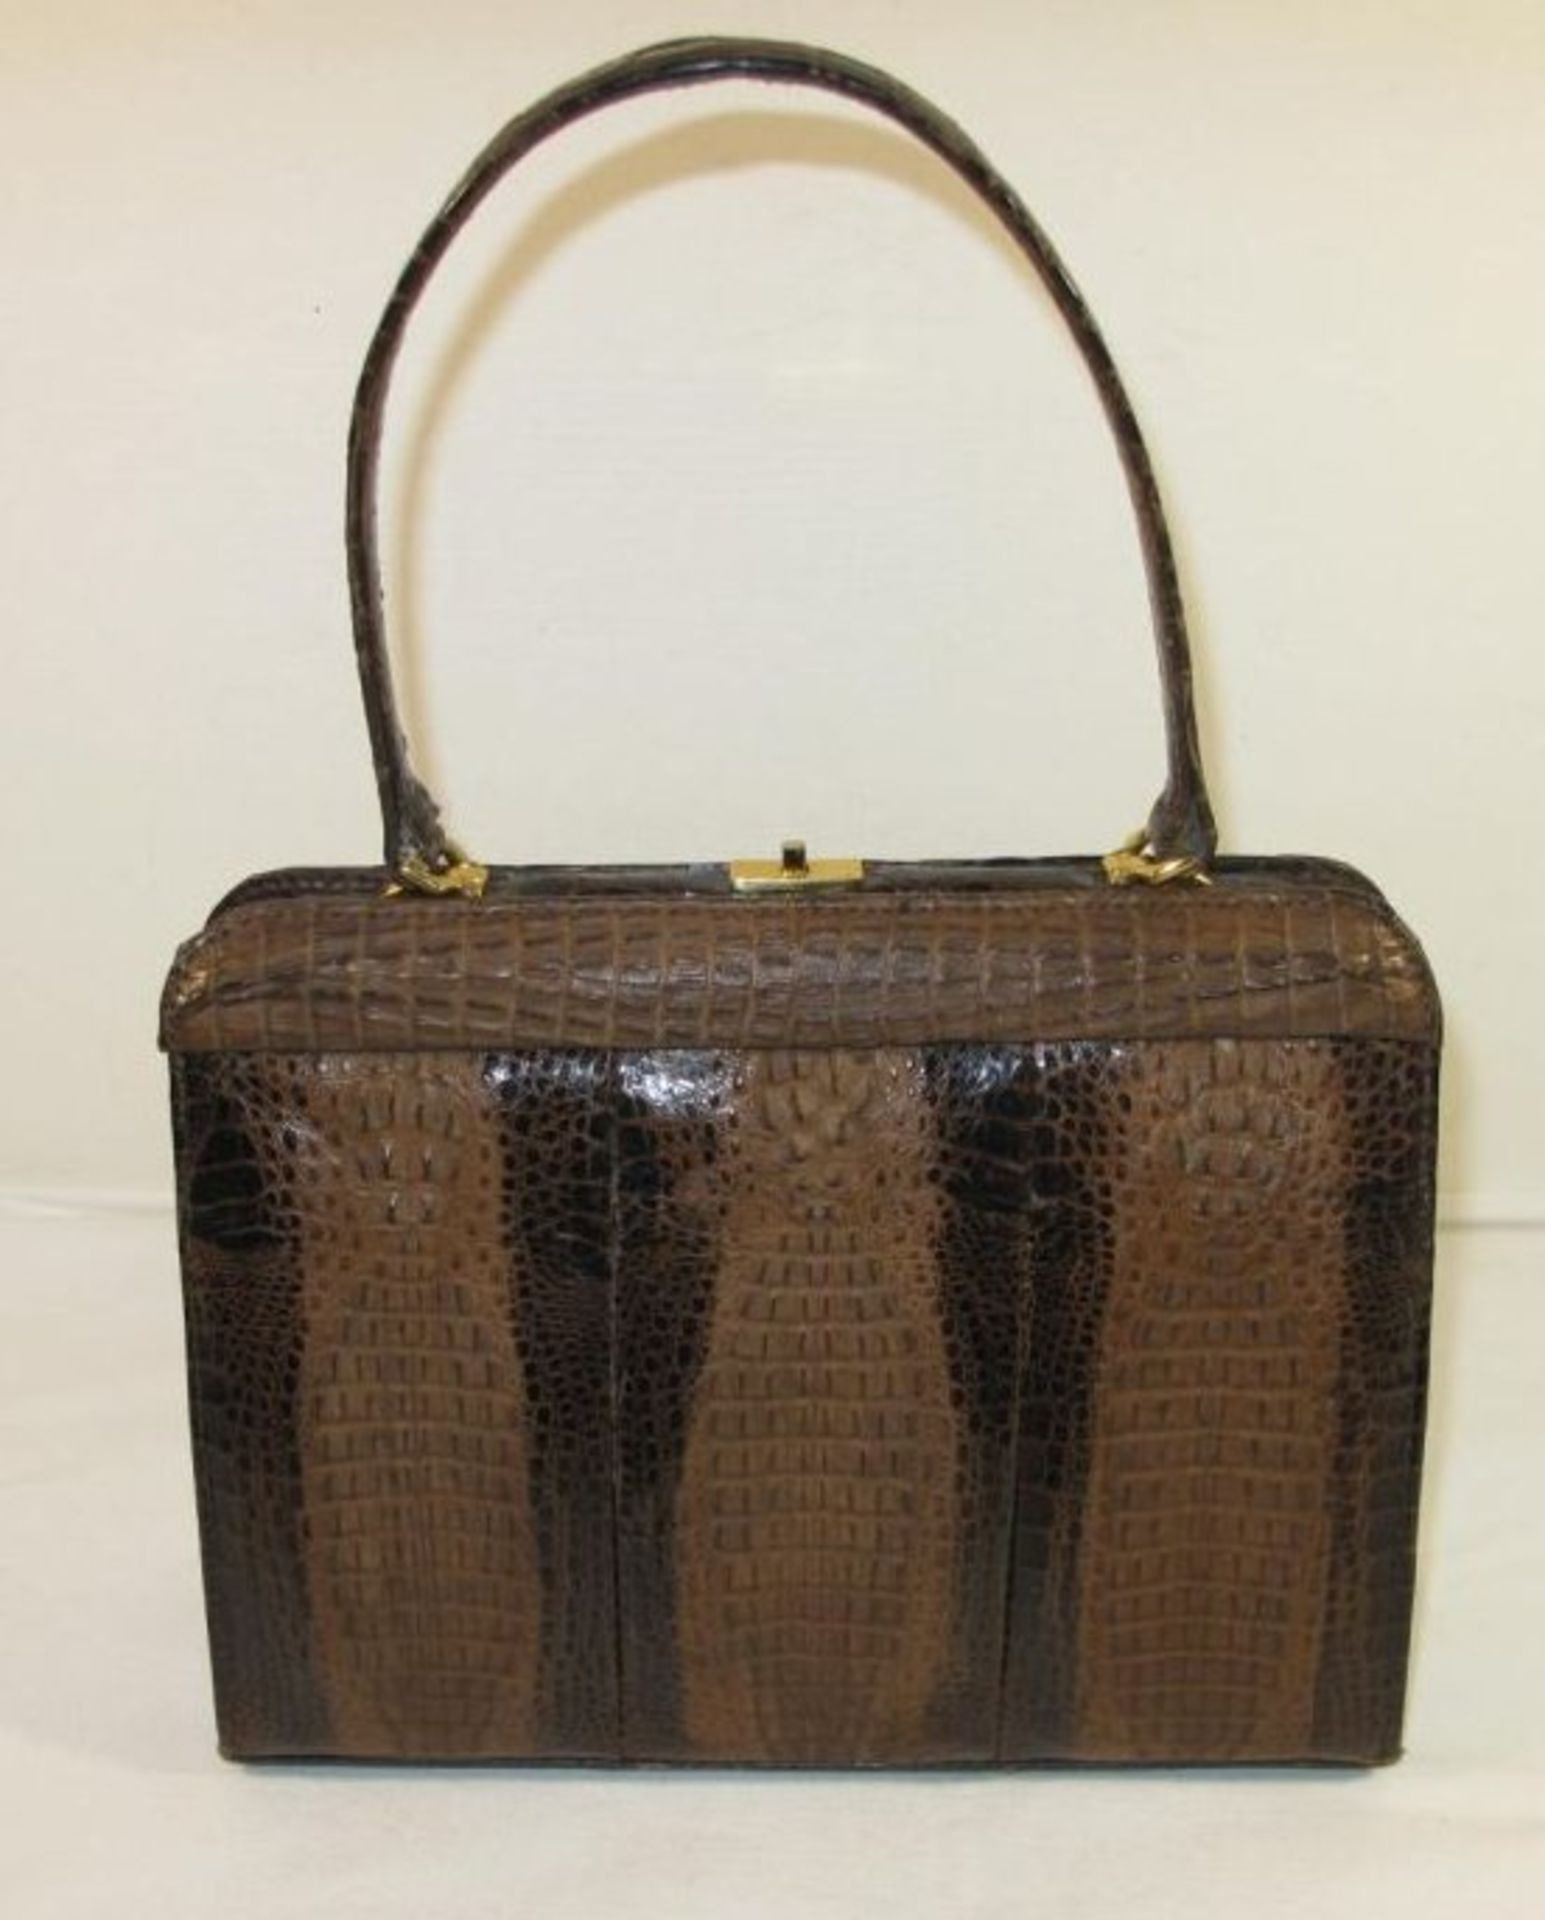 Damenhandtasche, Krokoleder, wohl 60/70er Jahre, 19 x 24cm, leichte Tragespuren.